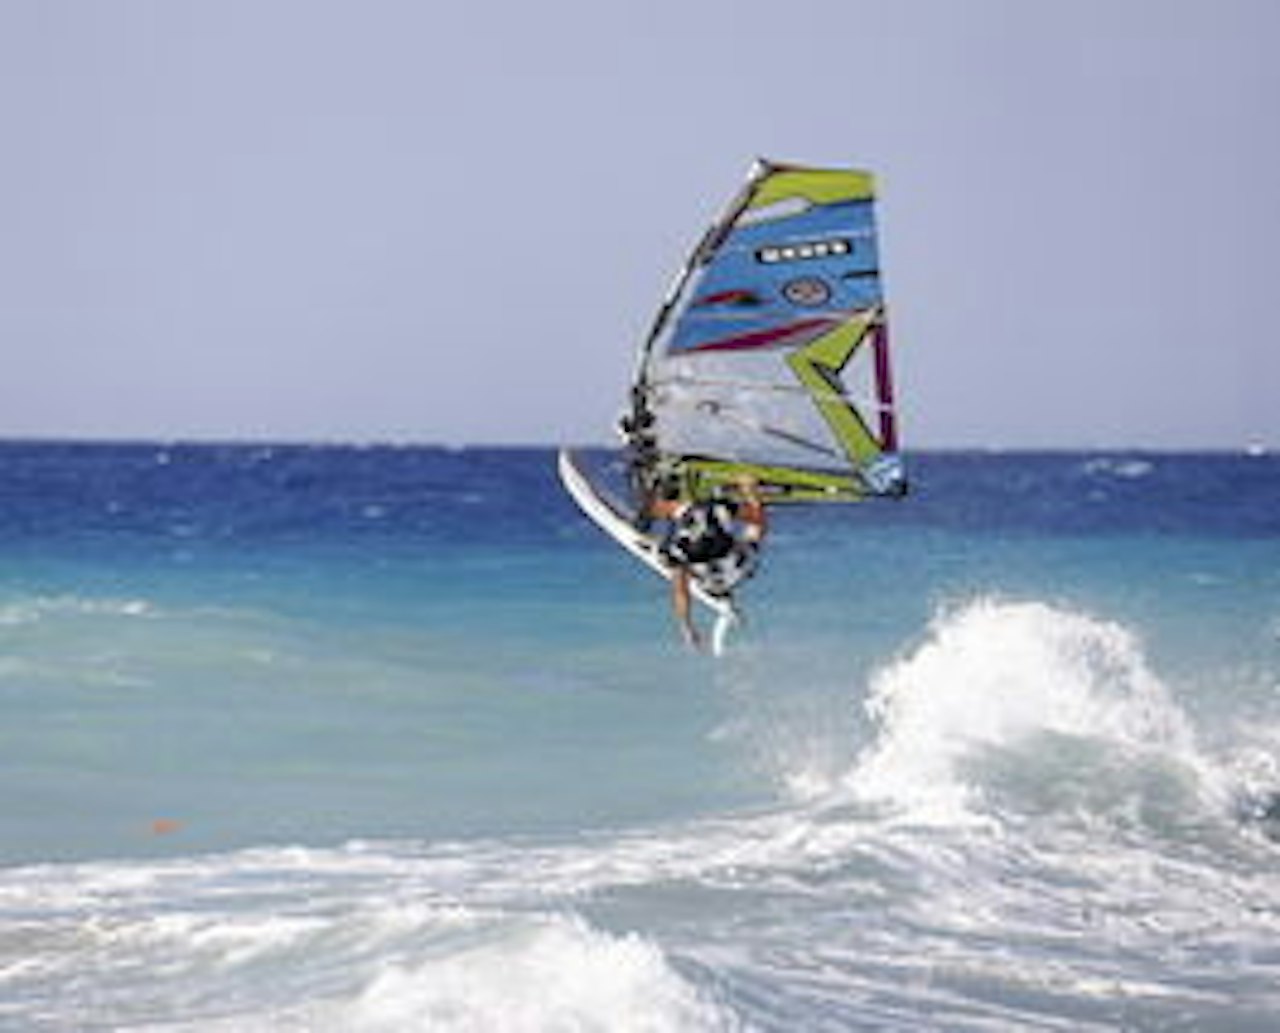 TURISTMÅL: På Rhodos er mulighetene store for familie- og windsurfingferie. Foto:©Morten Knudsen